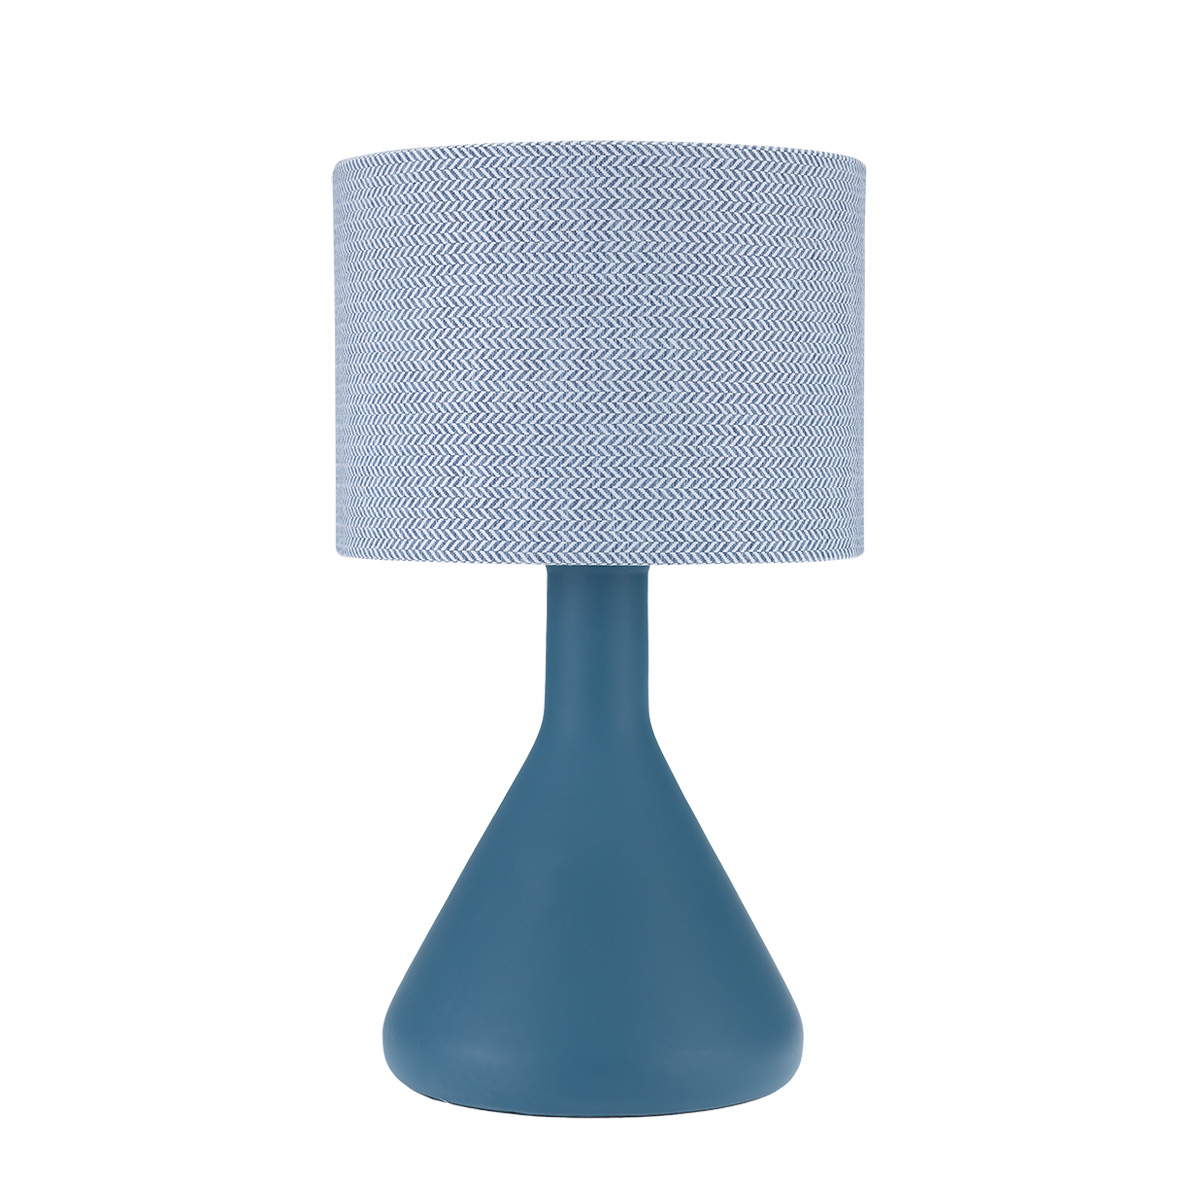 Μπλε επιτραπέζιο φωτιστικό LAB blue table lamp